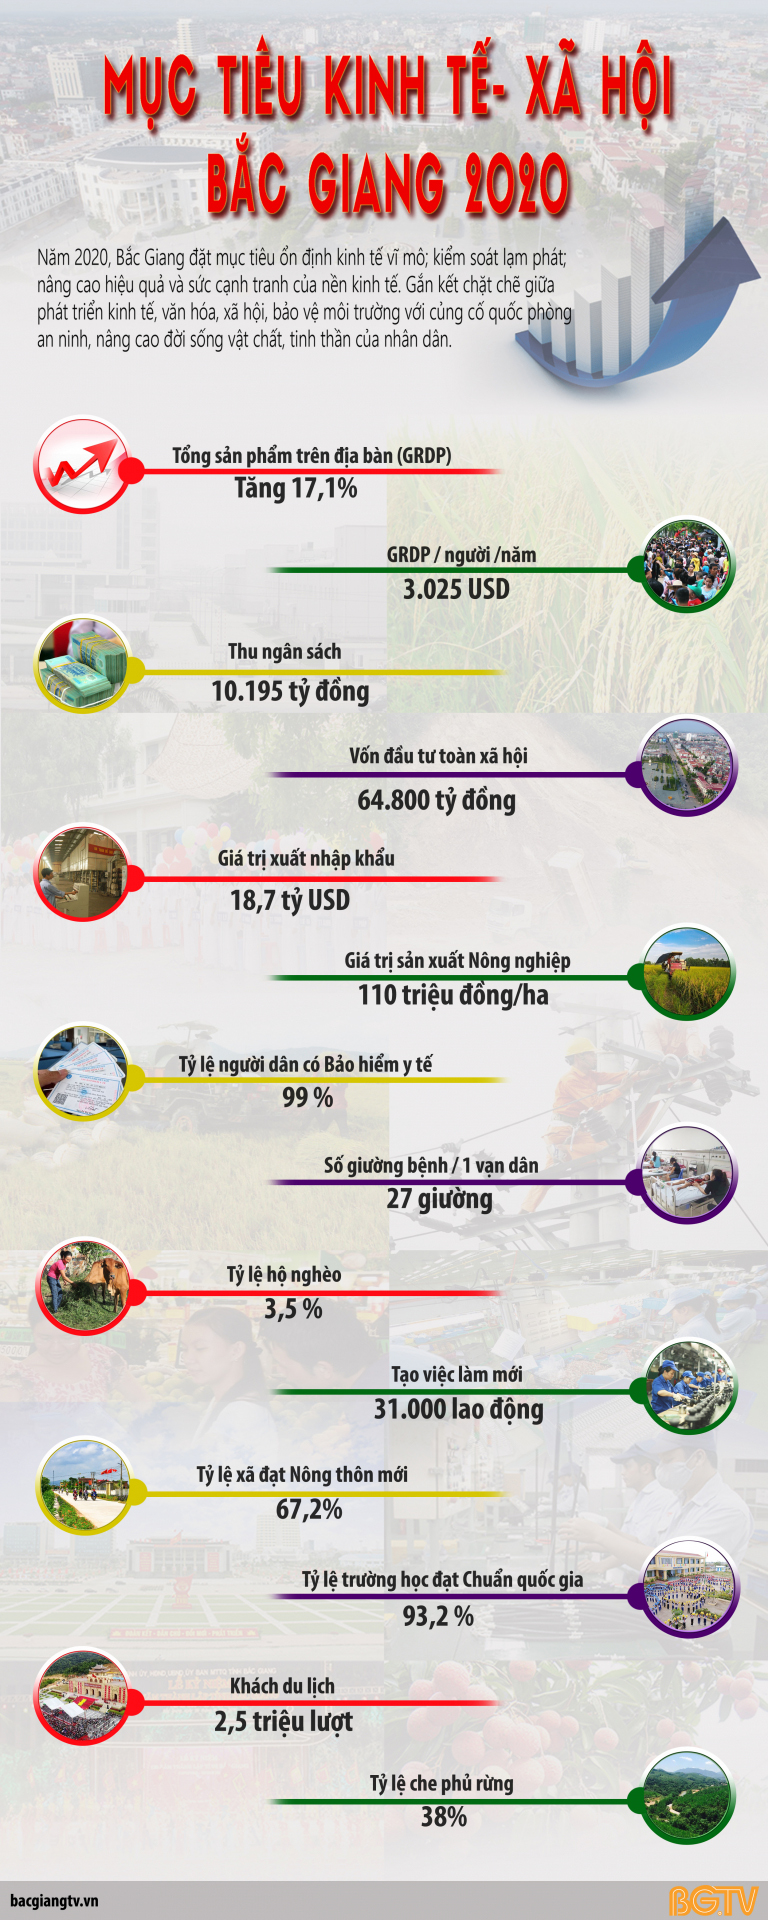 Infographic: Mục tiêu kinh tế - xã hội Bắc Giang 2020